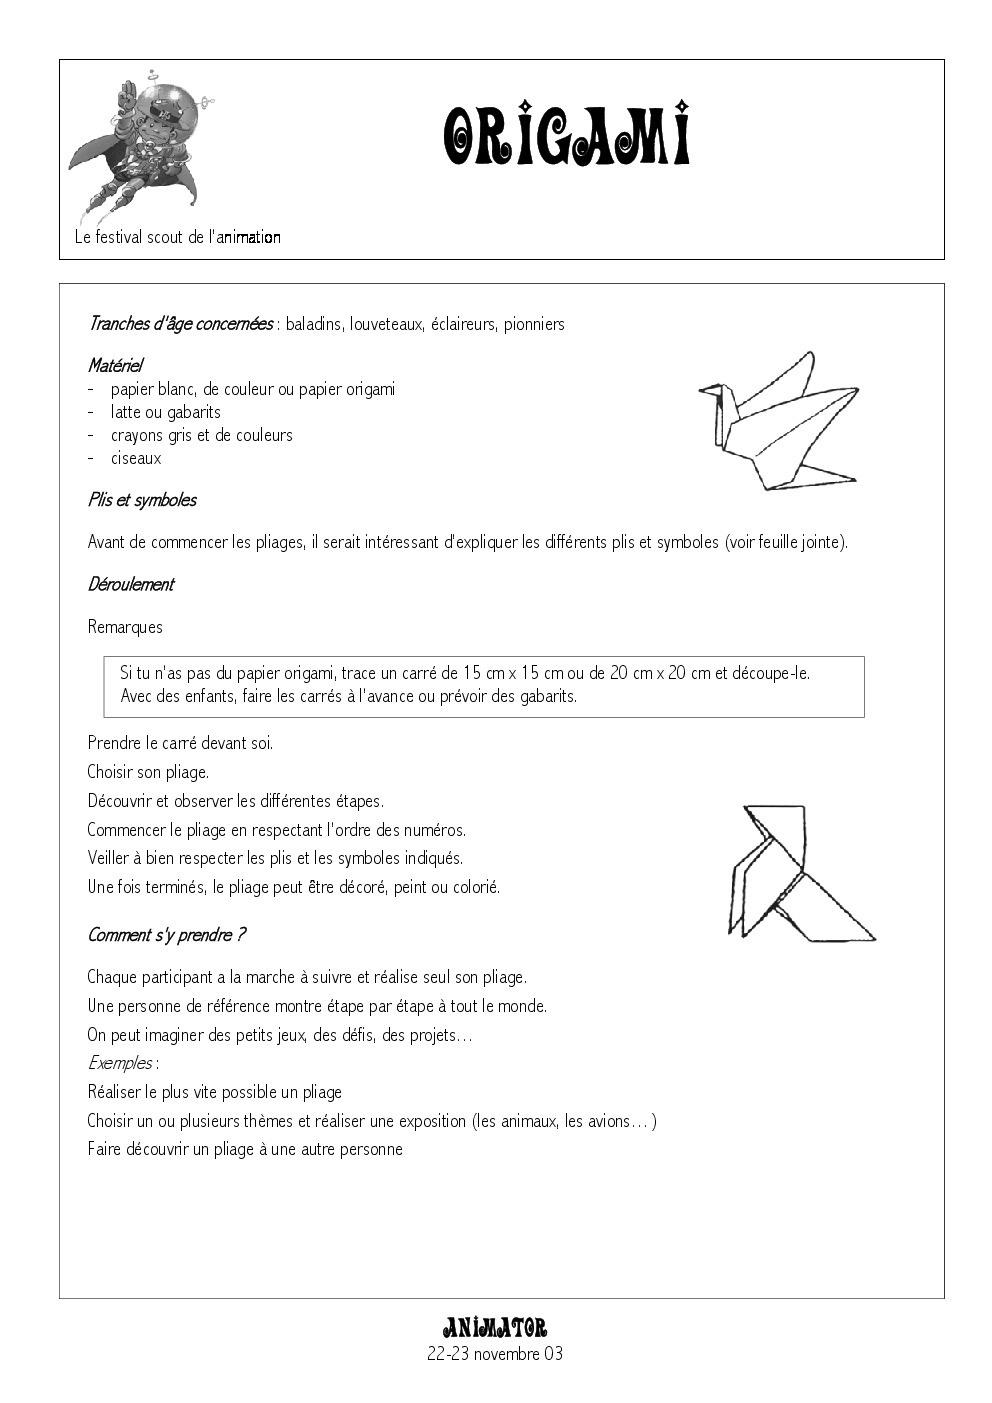 fiche_origami.pdf